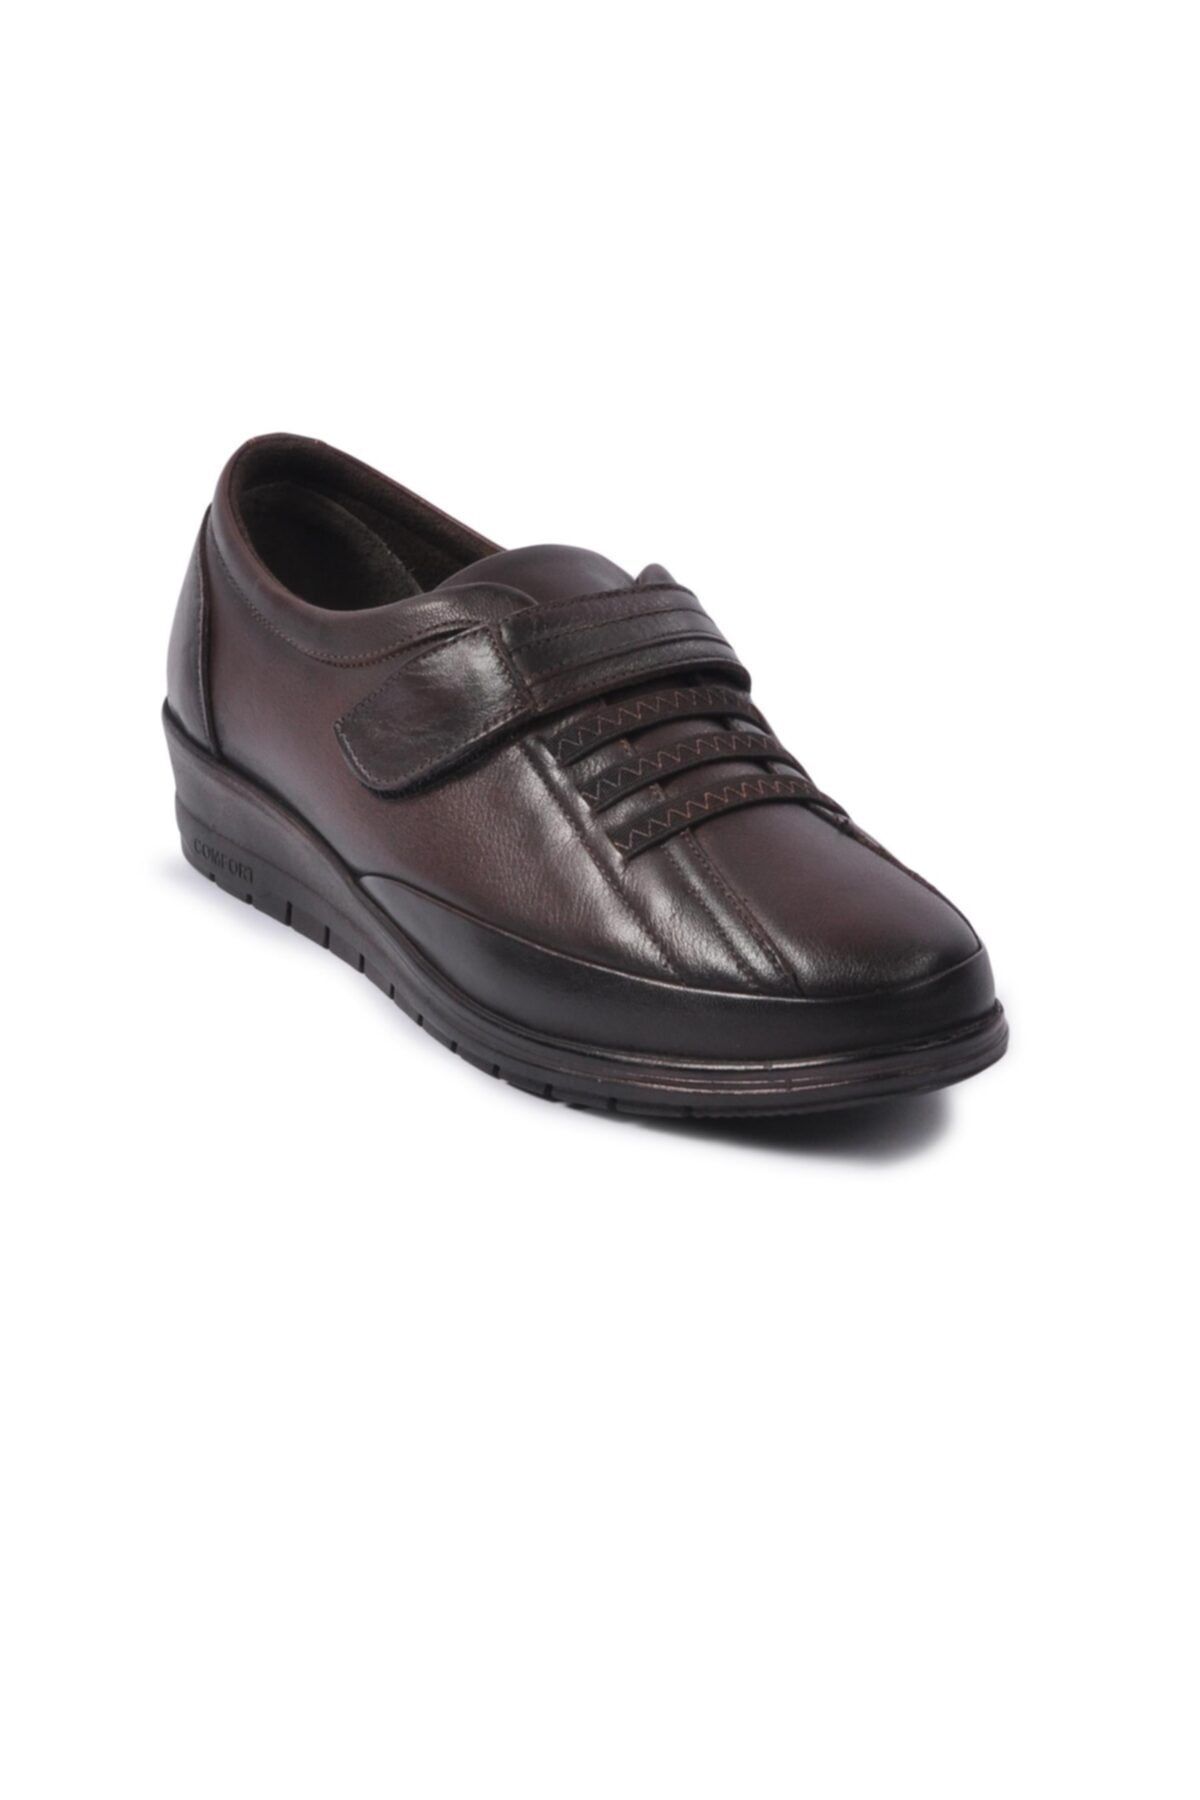 Voyager Kadın Kahverengi Hakiki Deri Klasik Ayakkabı